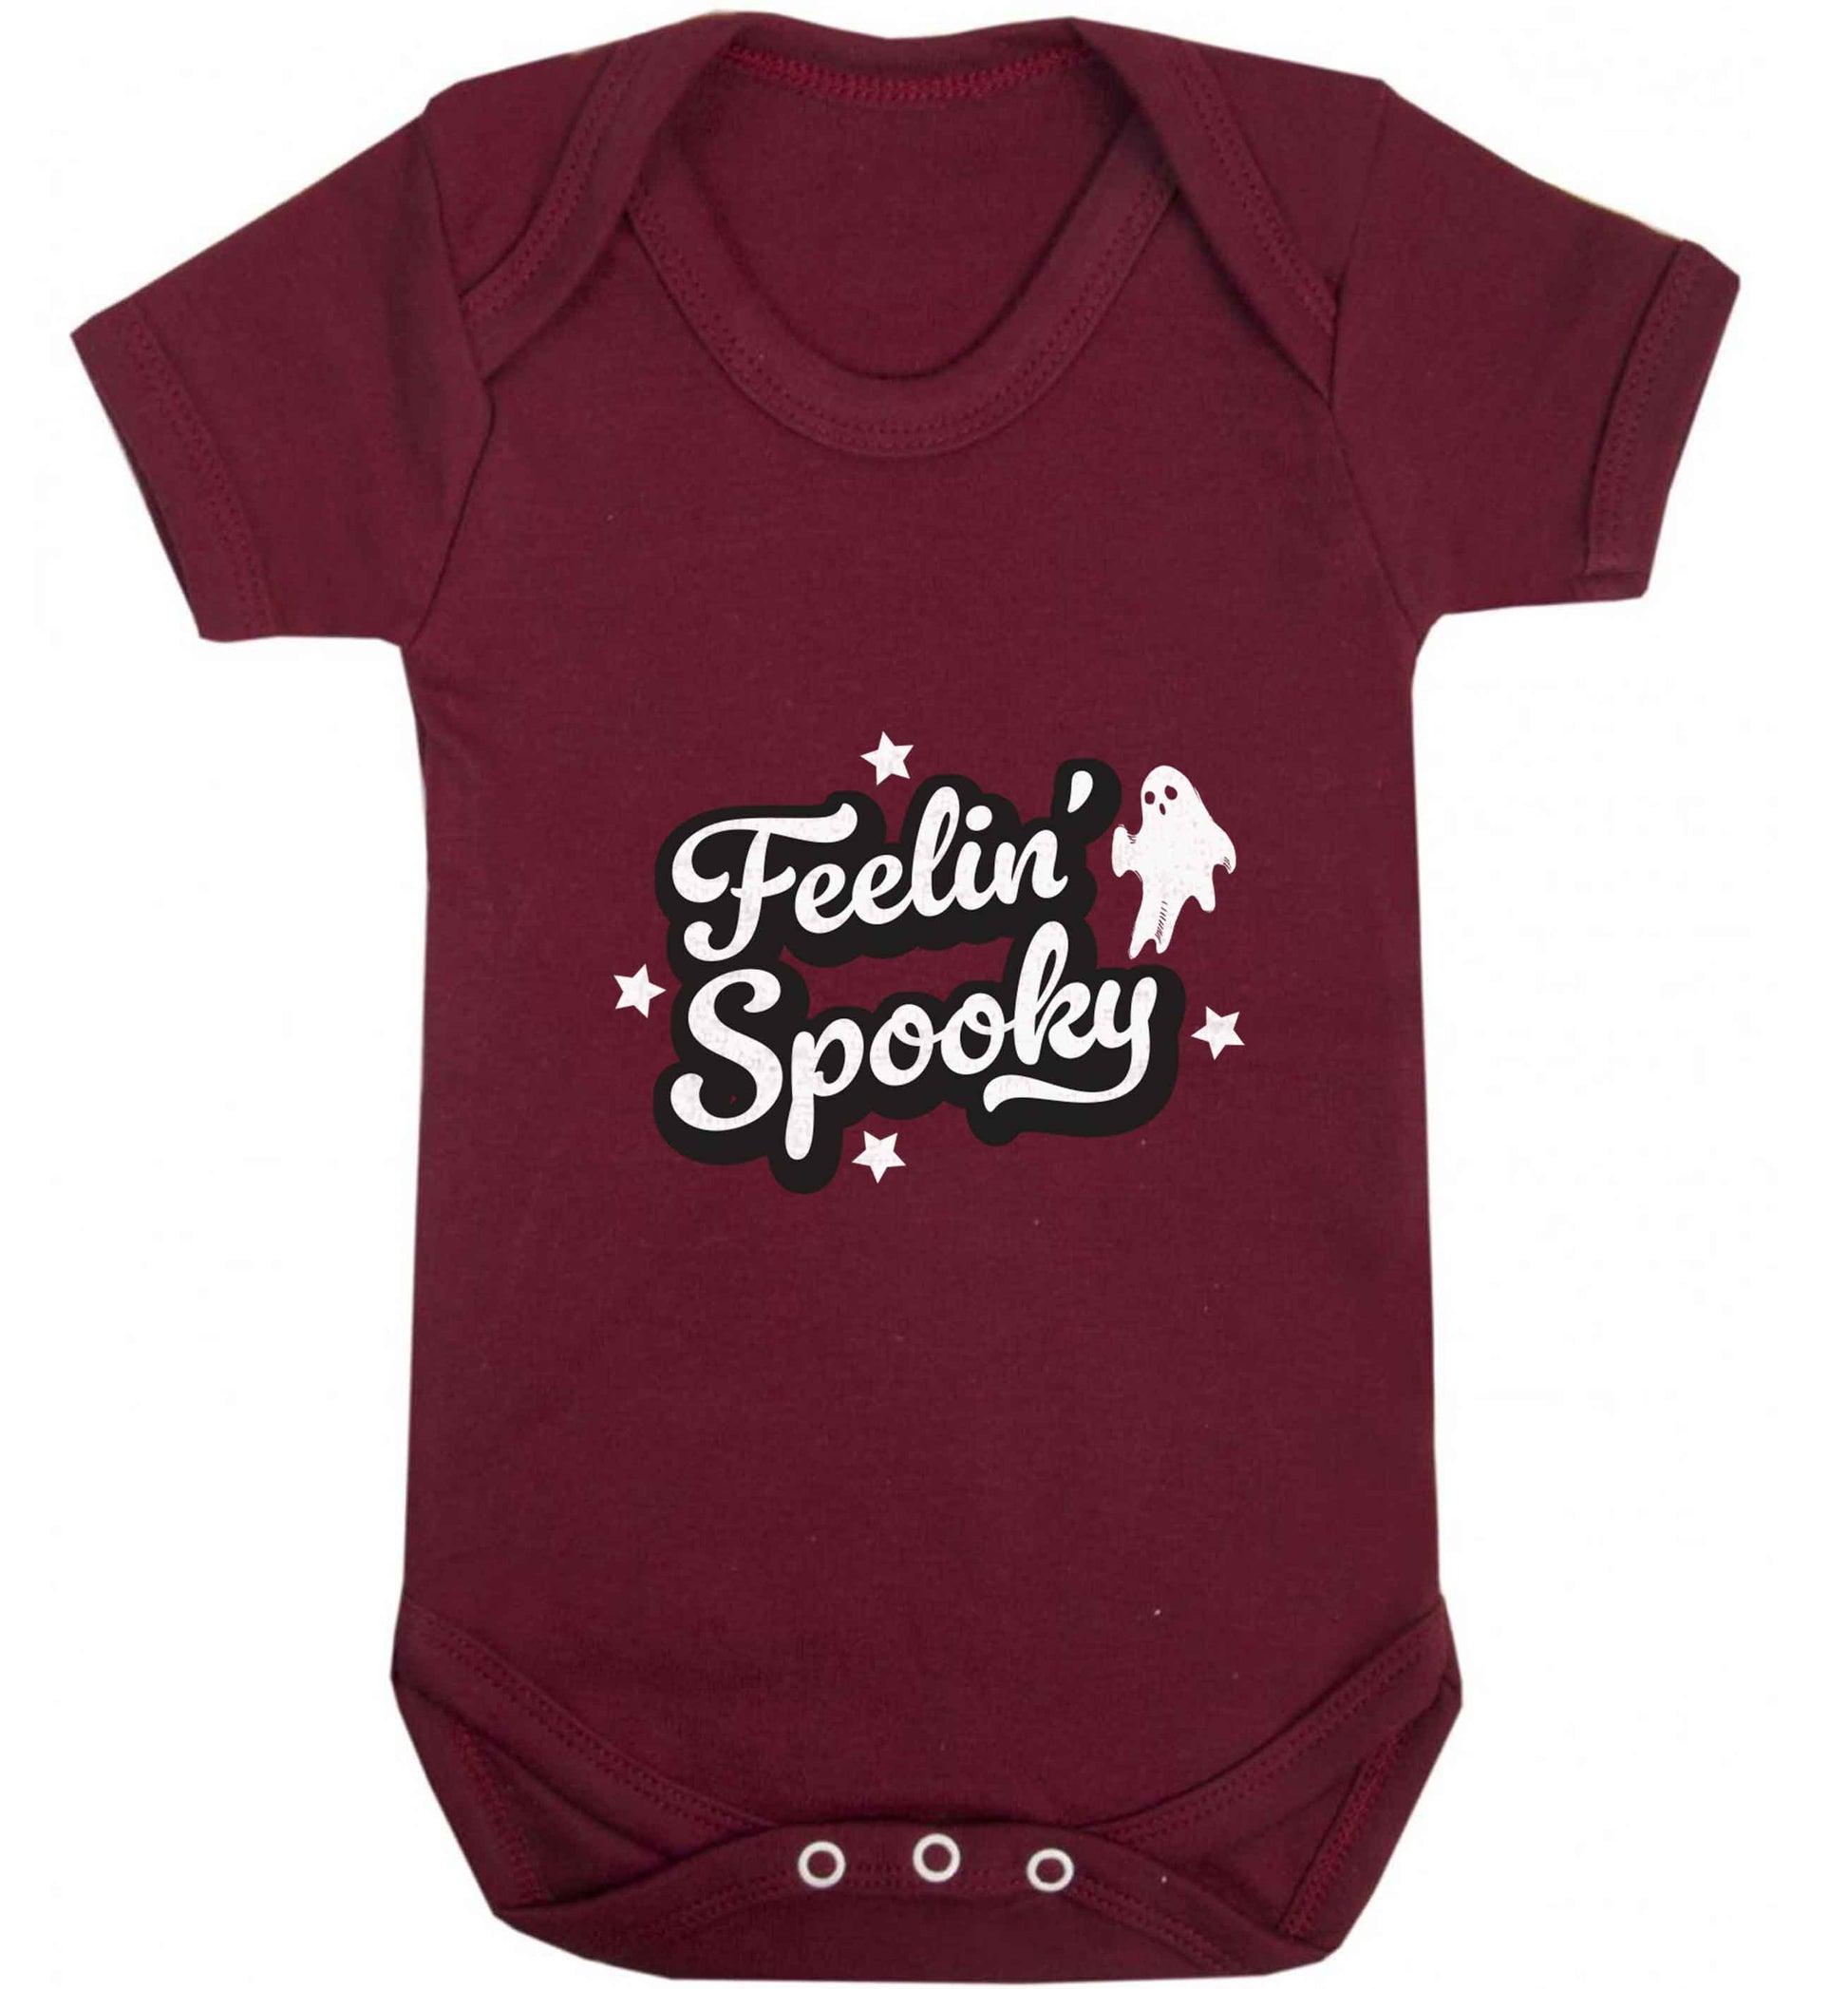 Feelin' Spooky Kit baby vest maroon 18-24 months